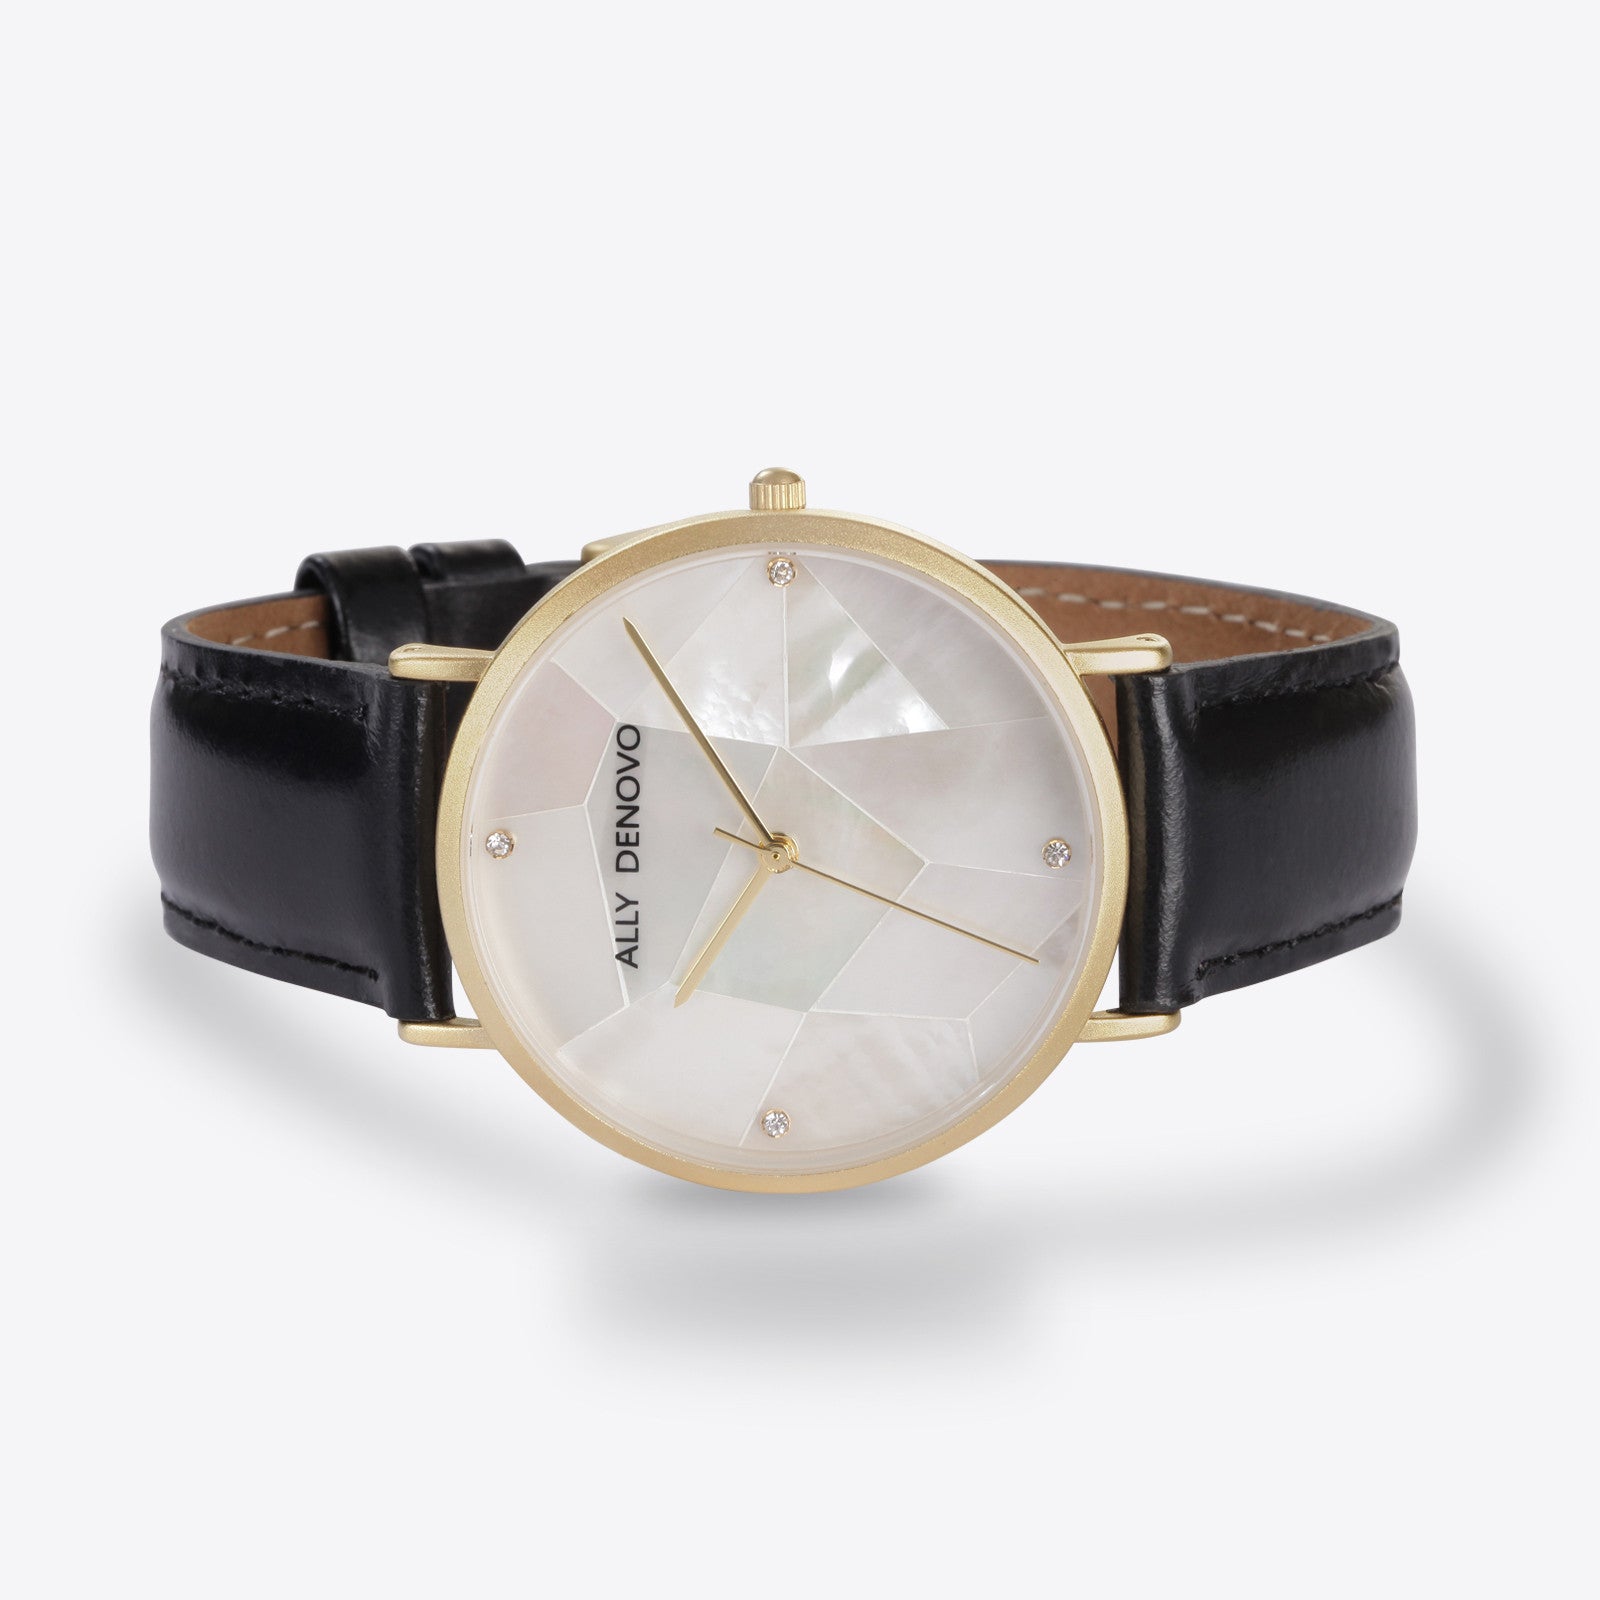 Gaia pearl皮革腕錶-白色菱形琉璃亮金框黑色真皮錶帶 AF5003.8